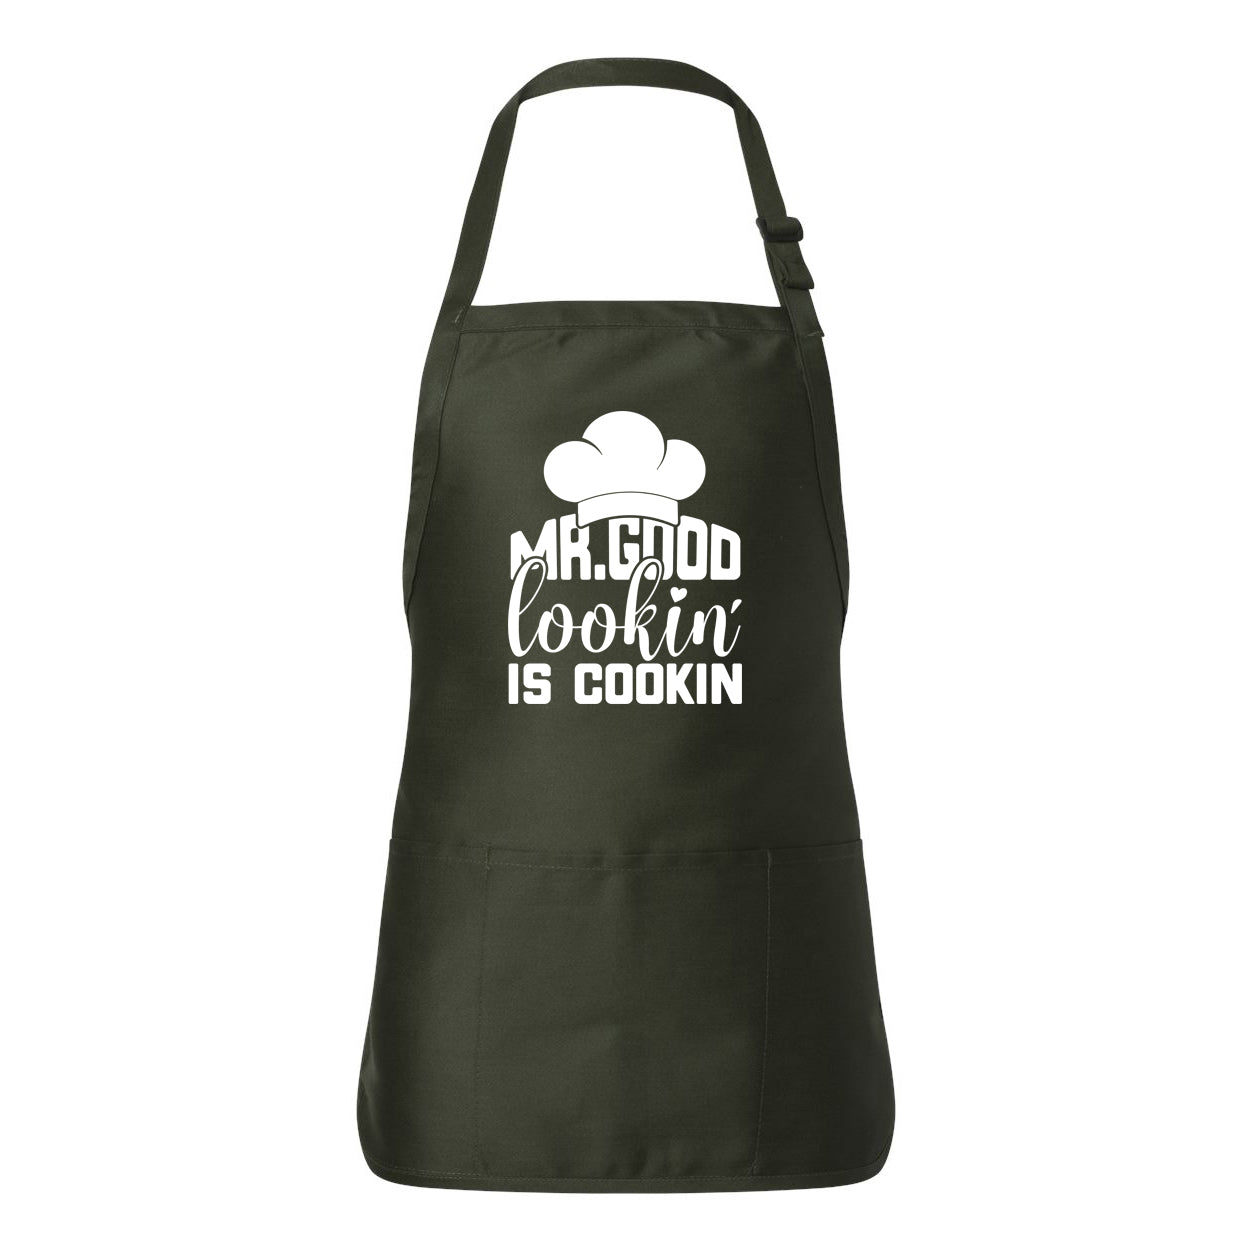 Good Lookin Is Cookin | Apron